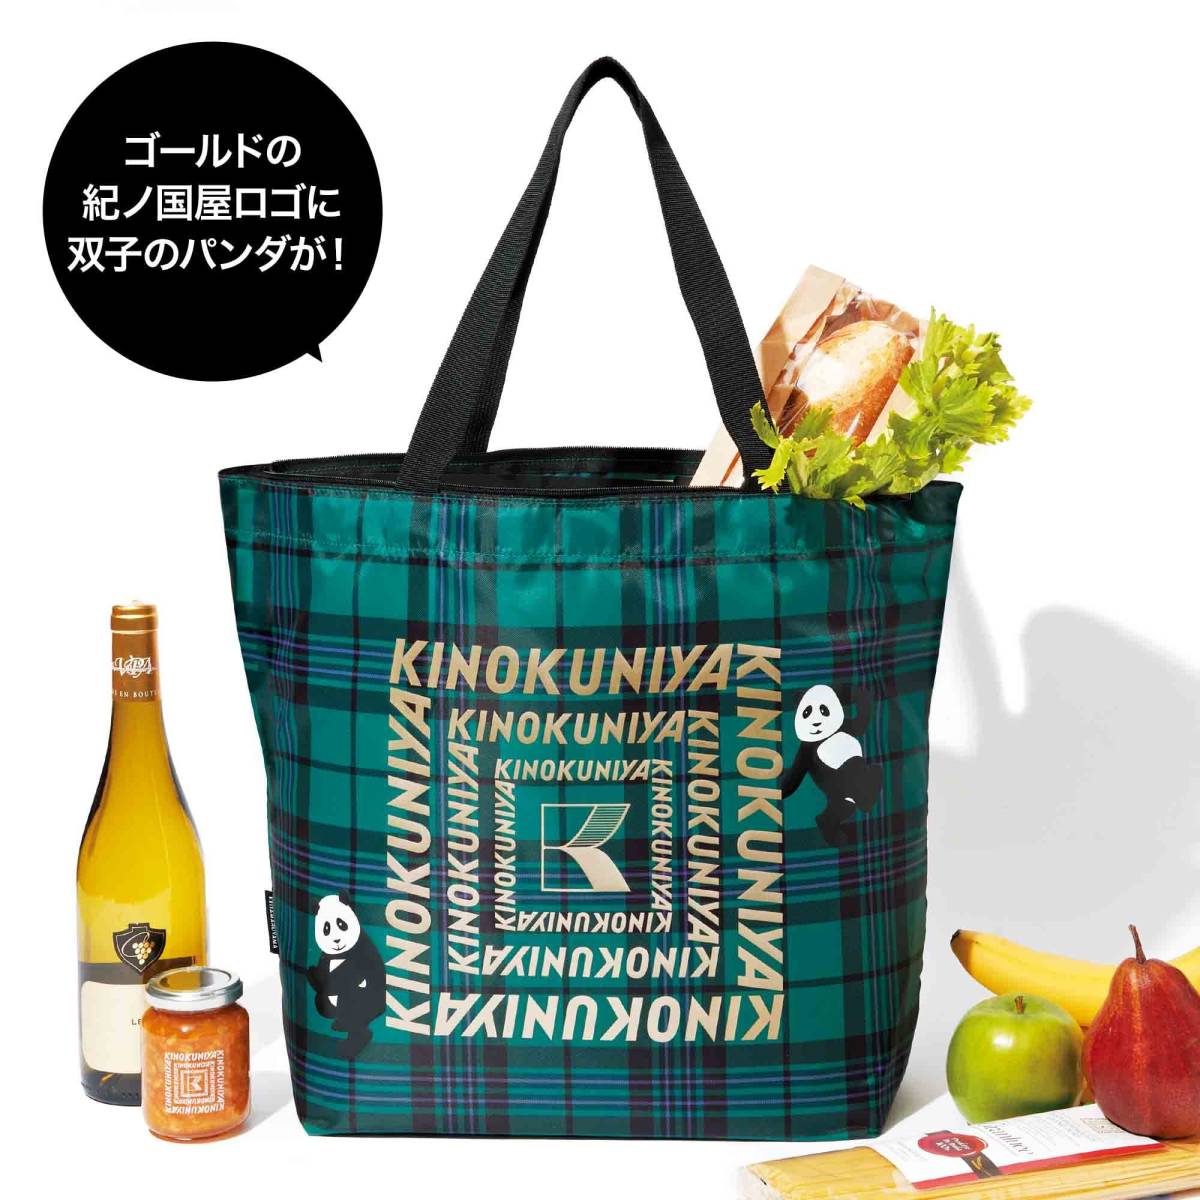 KINOKUNIYA KEITAMARUYAMA keep cool heat insulation with function tote bag 